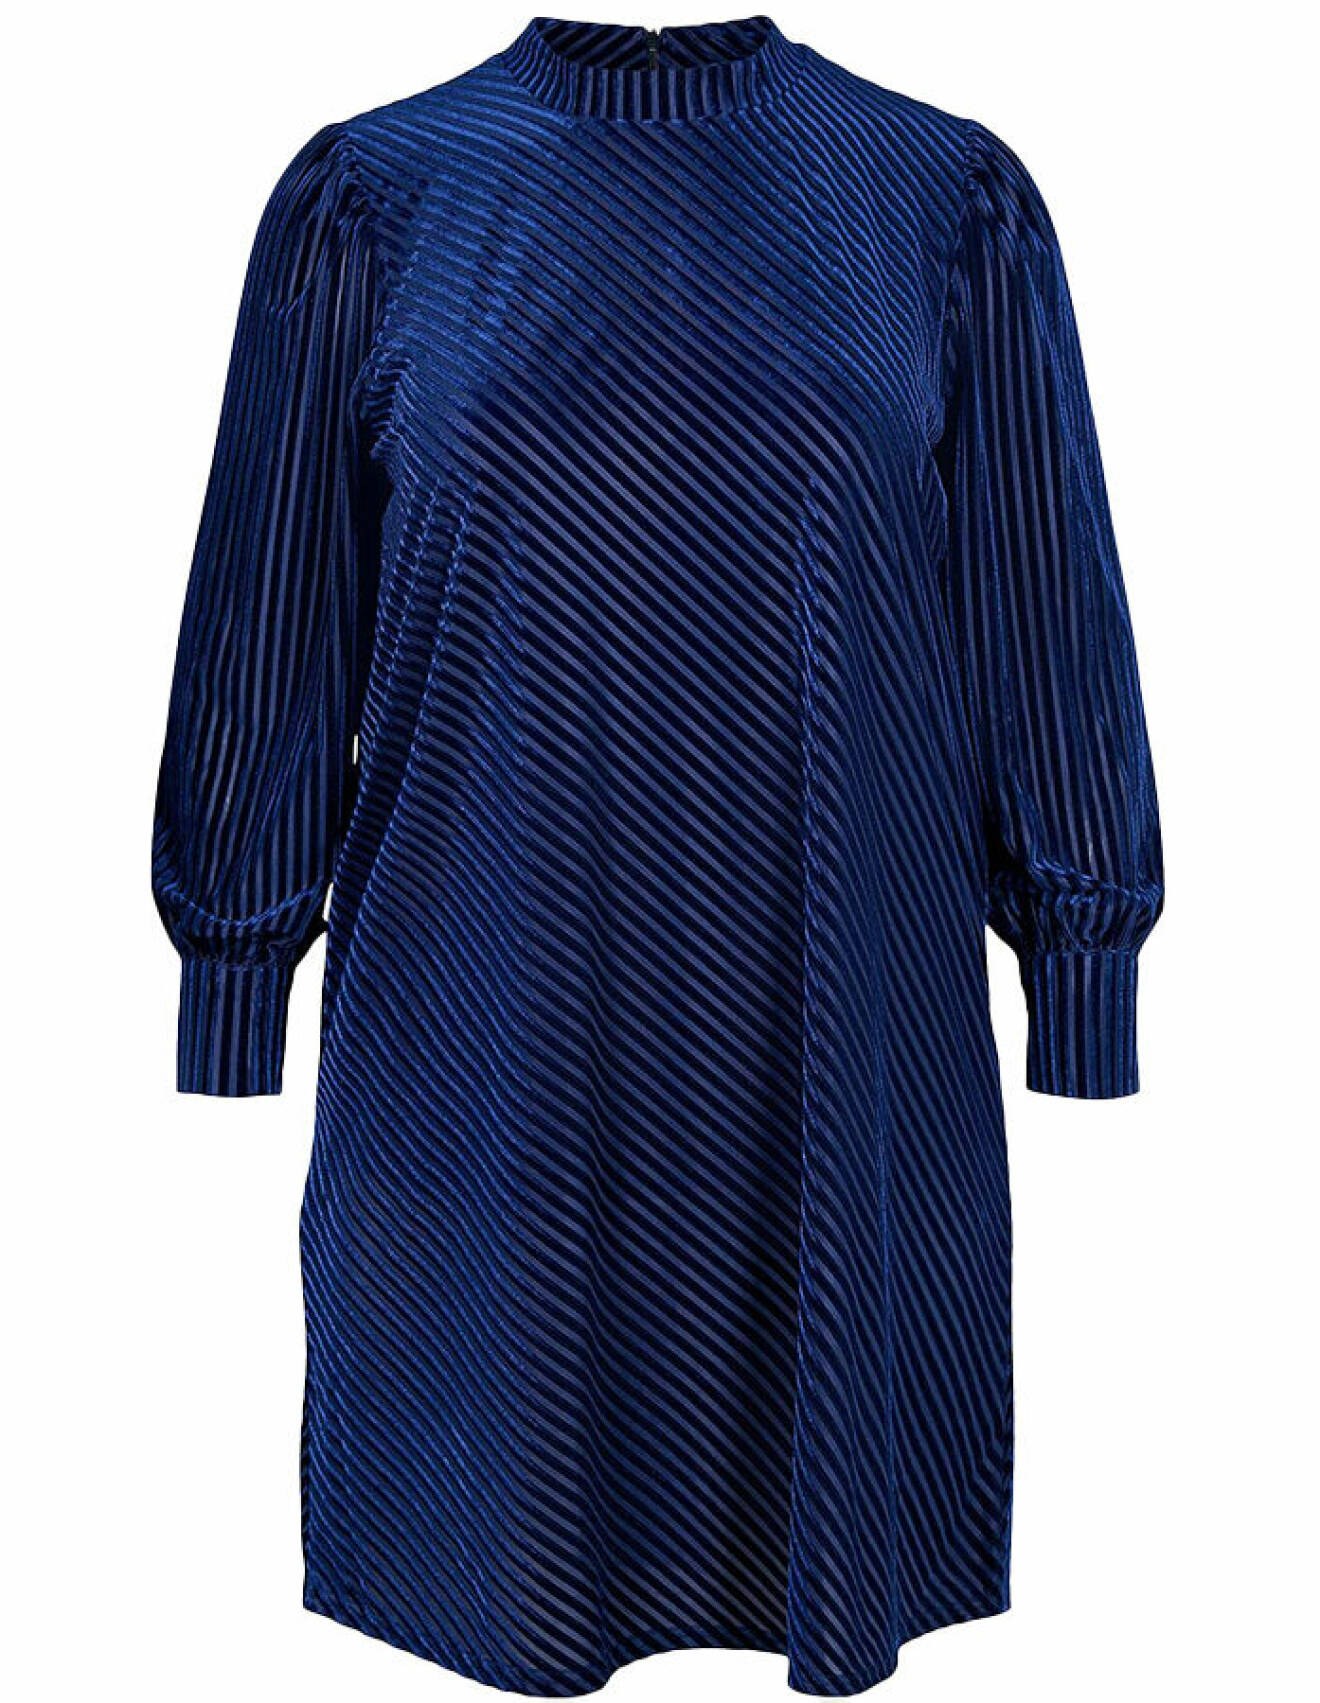 blå sammetsklänning i kort modell med långa ärmar och diagonala ränder från cellebes